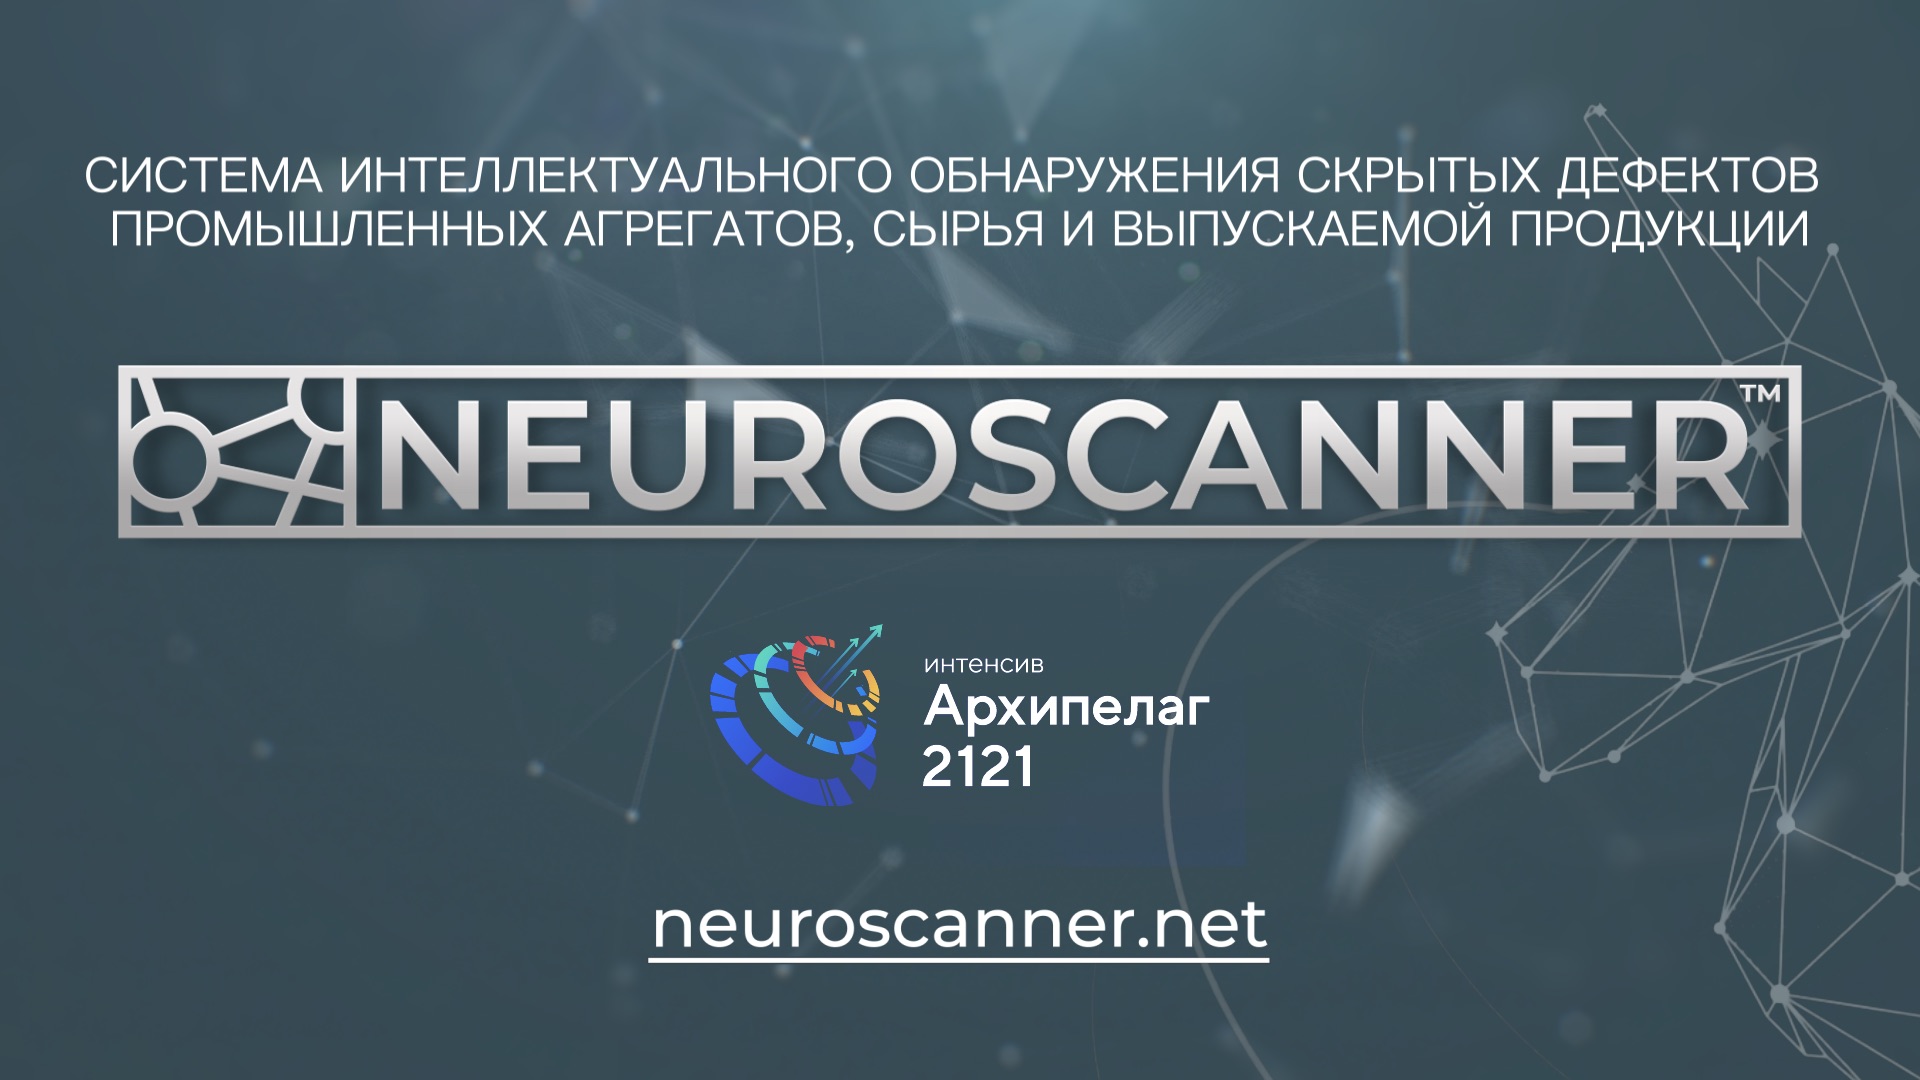 Нейросканер (Neuroscanner)